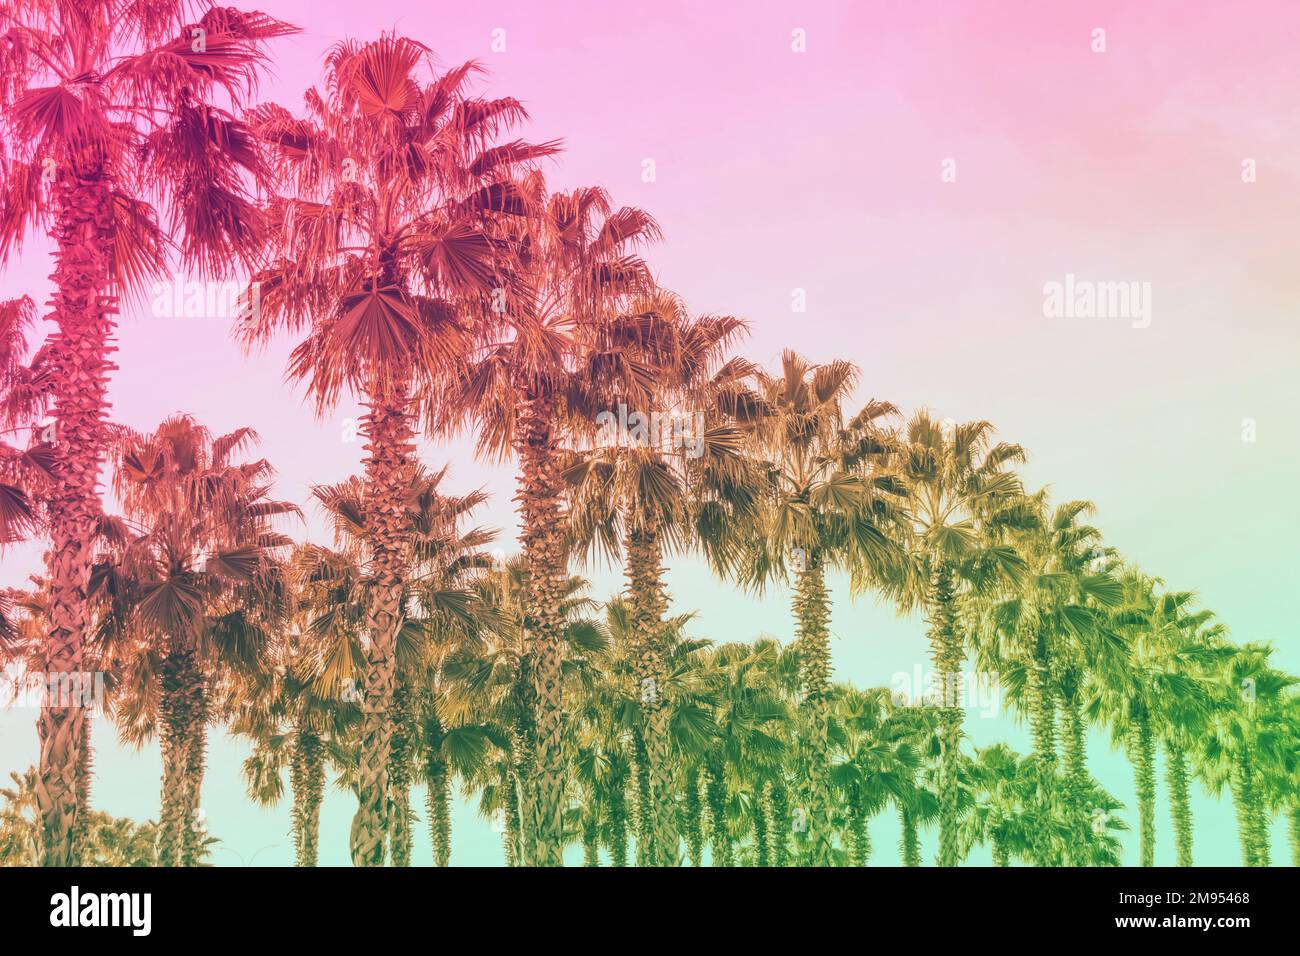 Fila de palmeras de washingtonia en crecimiento con filtro de color degradado Foto de stock